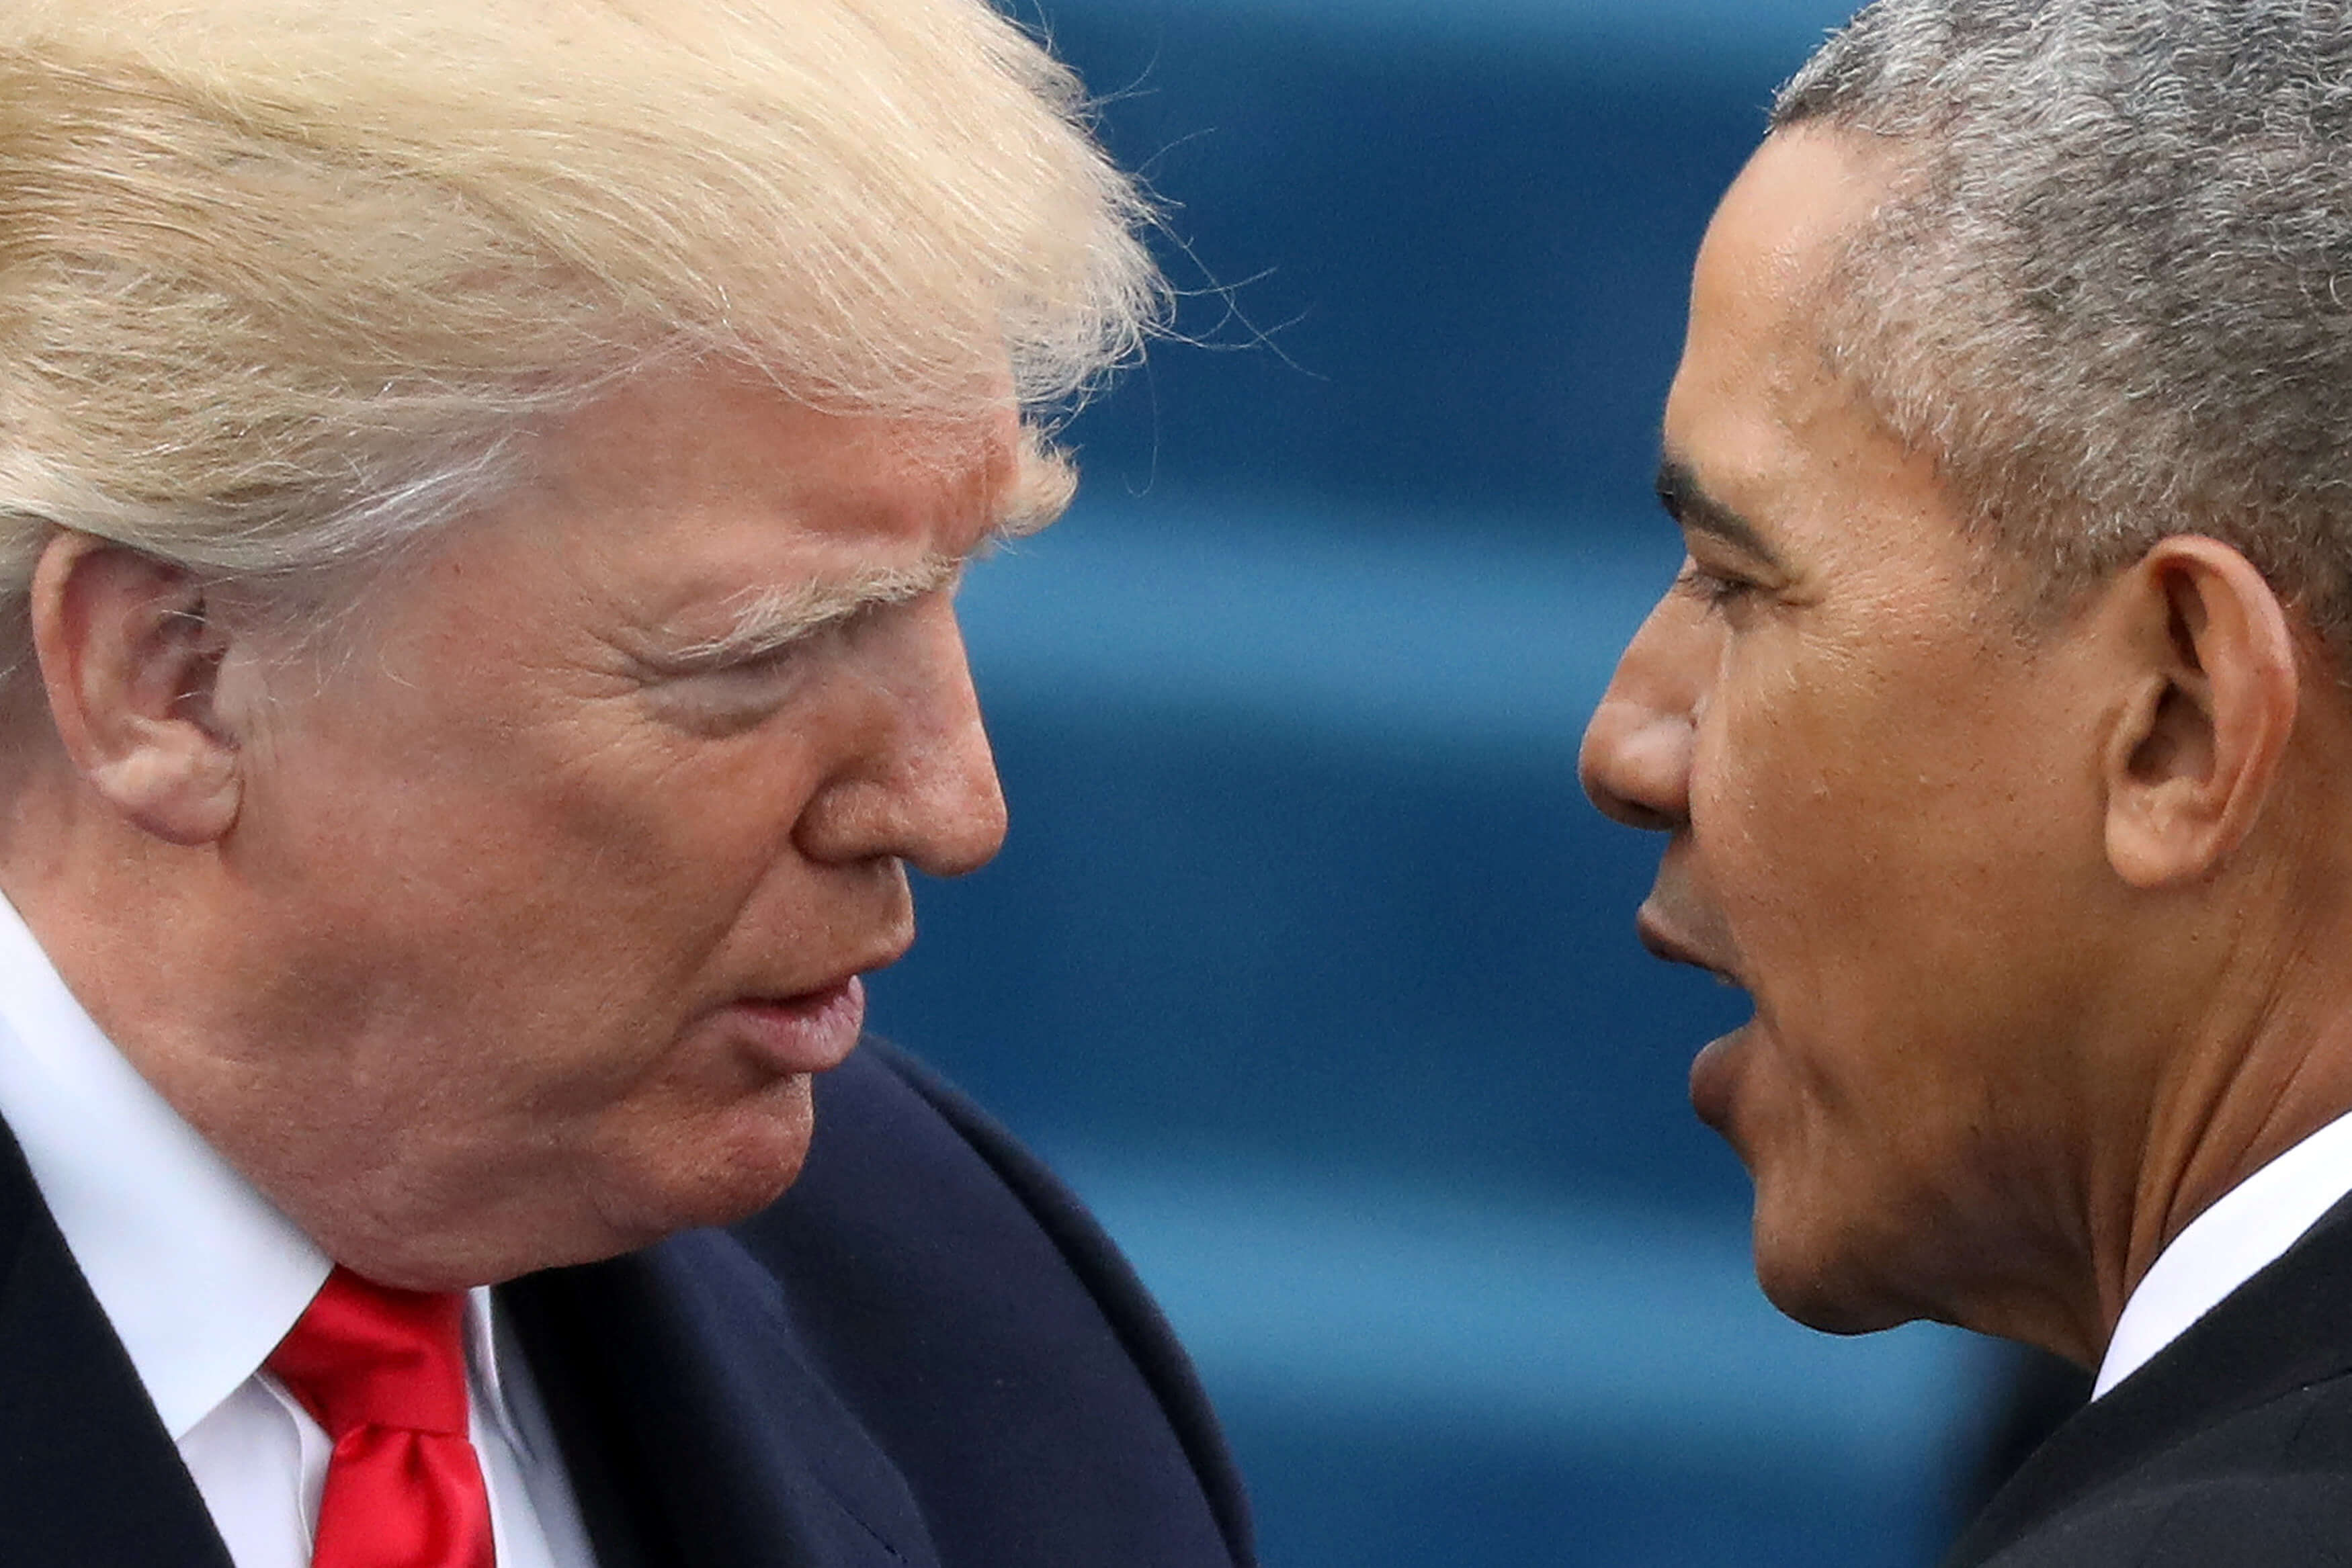 El expresidente estadounidense Barack Obama responde a Donald Trump que nunca ordenó grabar las conversaciones de ningún estadounidense. (Reuters/archivo)